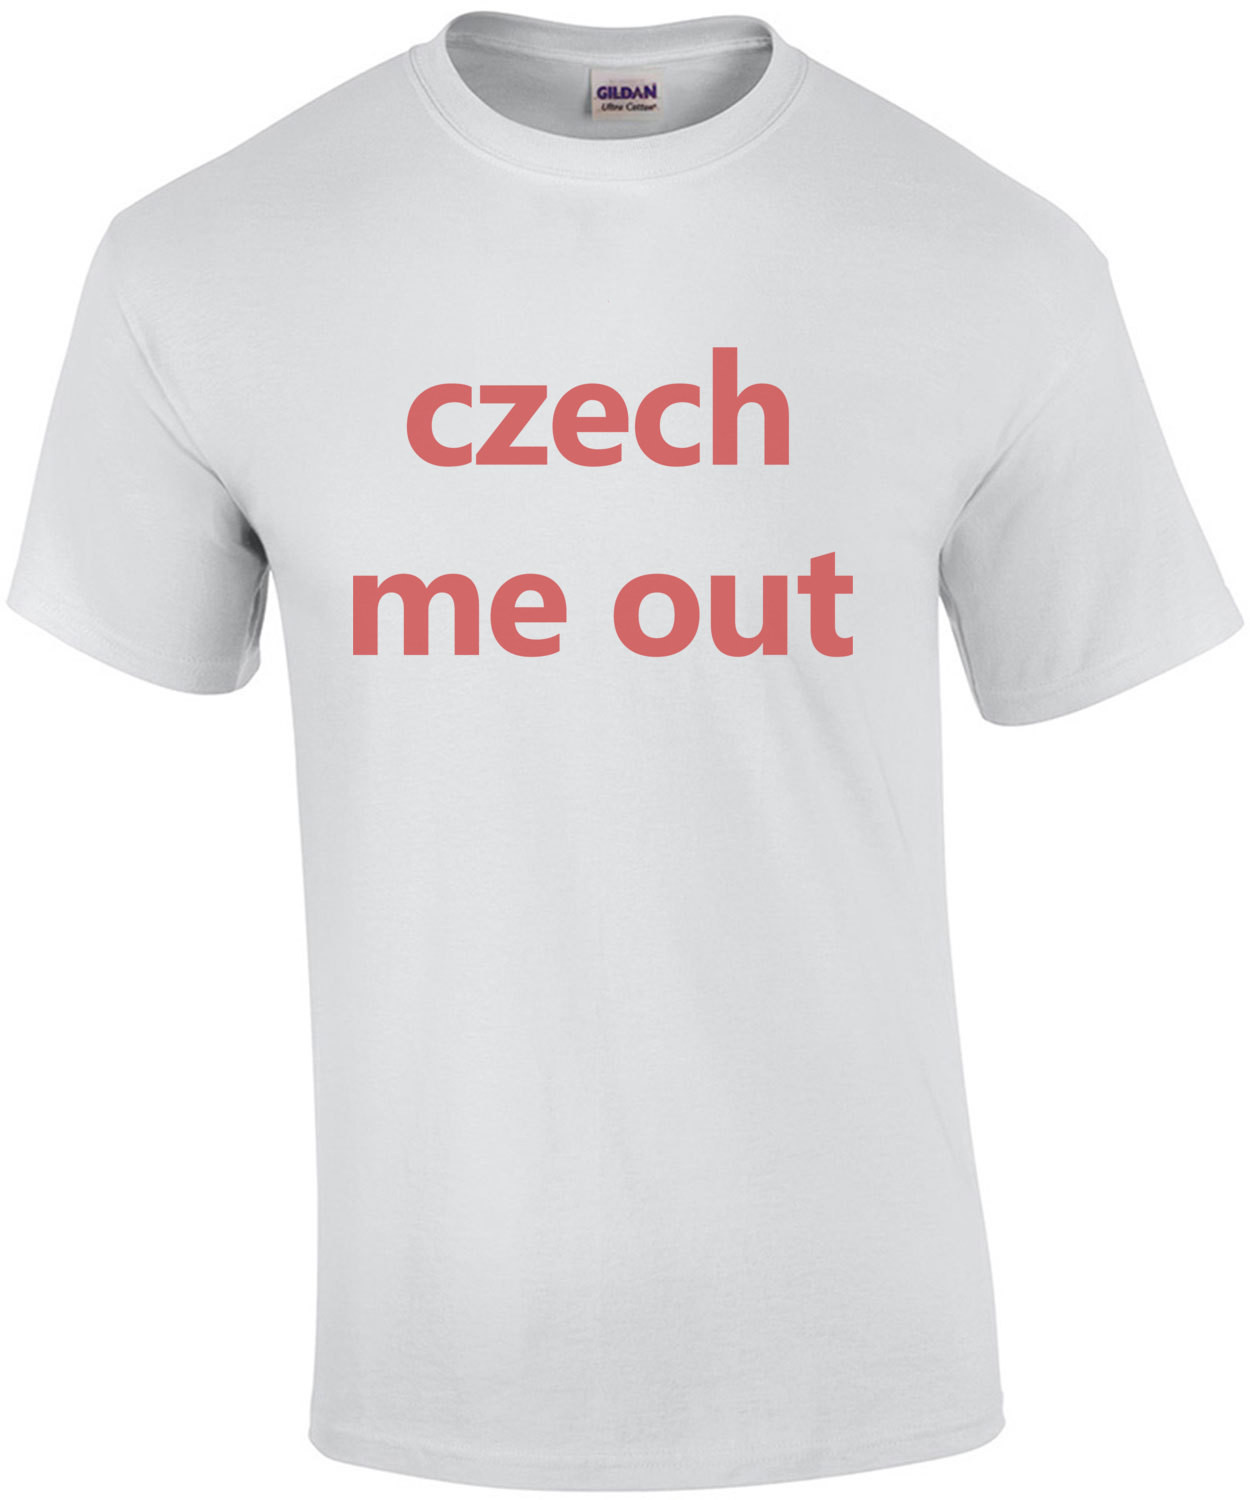 czech me out - funny czech t-shirt